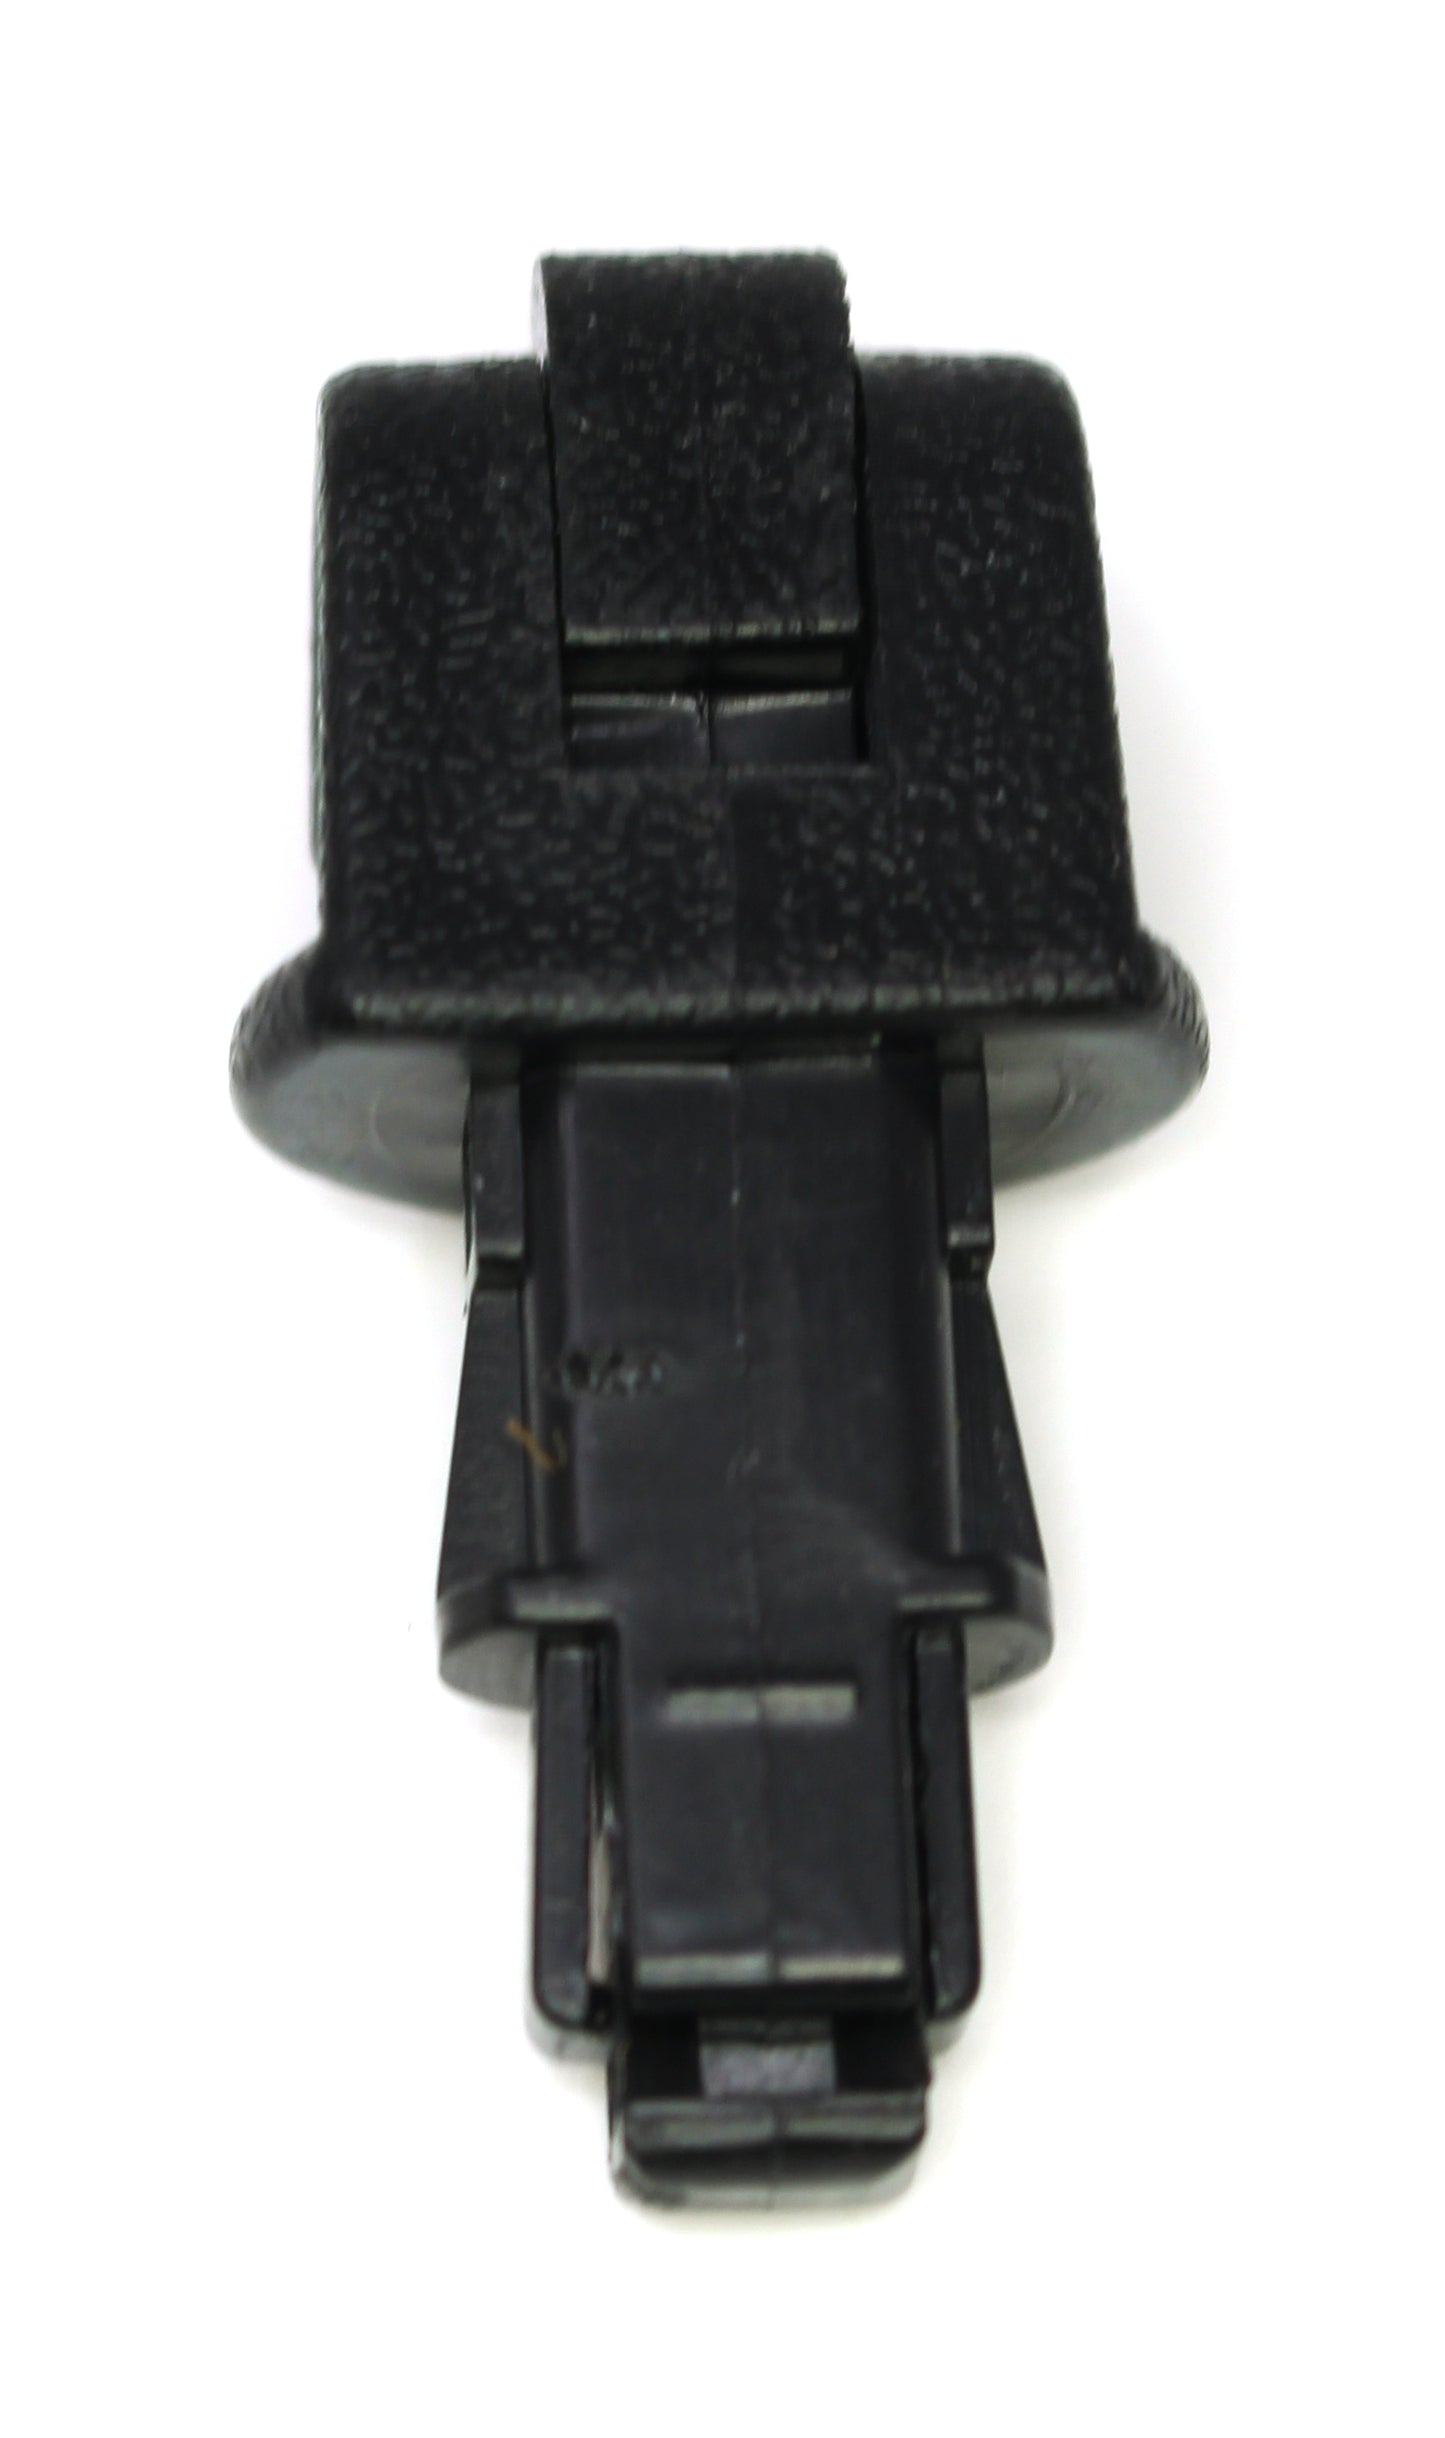 Sun Shade Hook Clip Kit Fits Honda Odyssey 2005-2010 Sliding Door Black -Multi-Pack